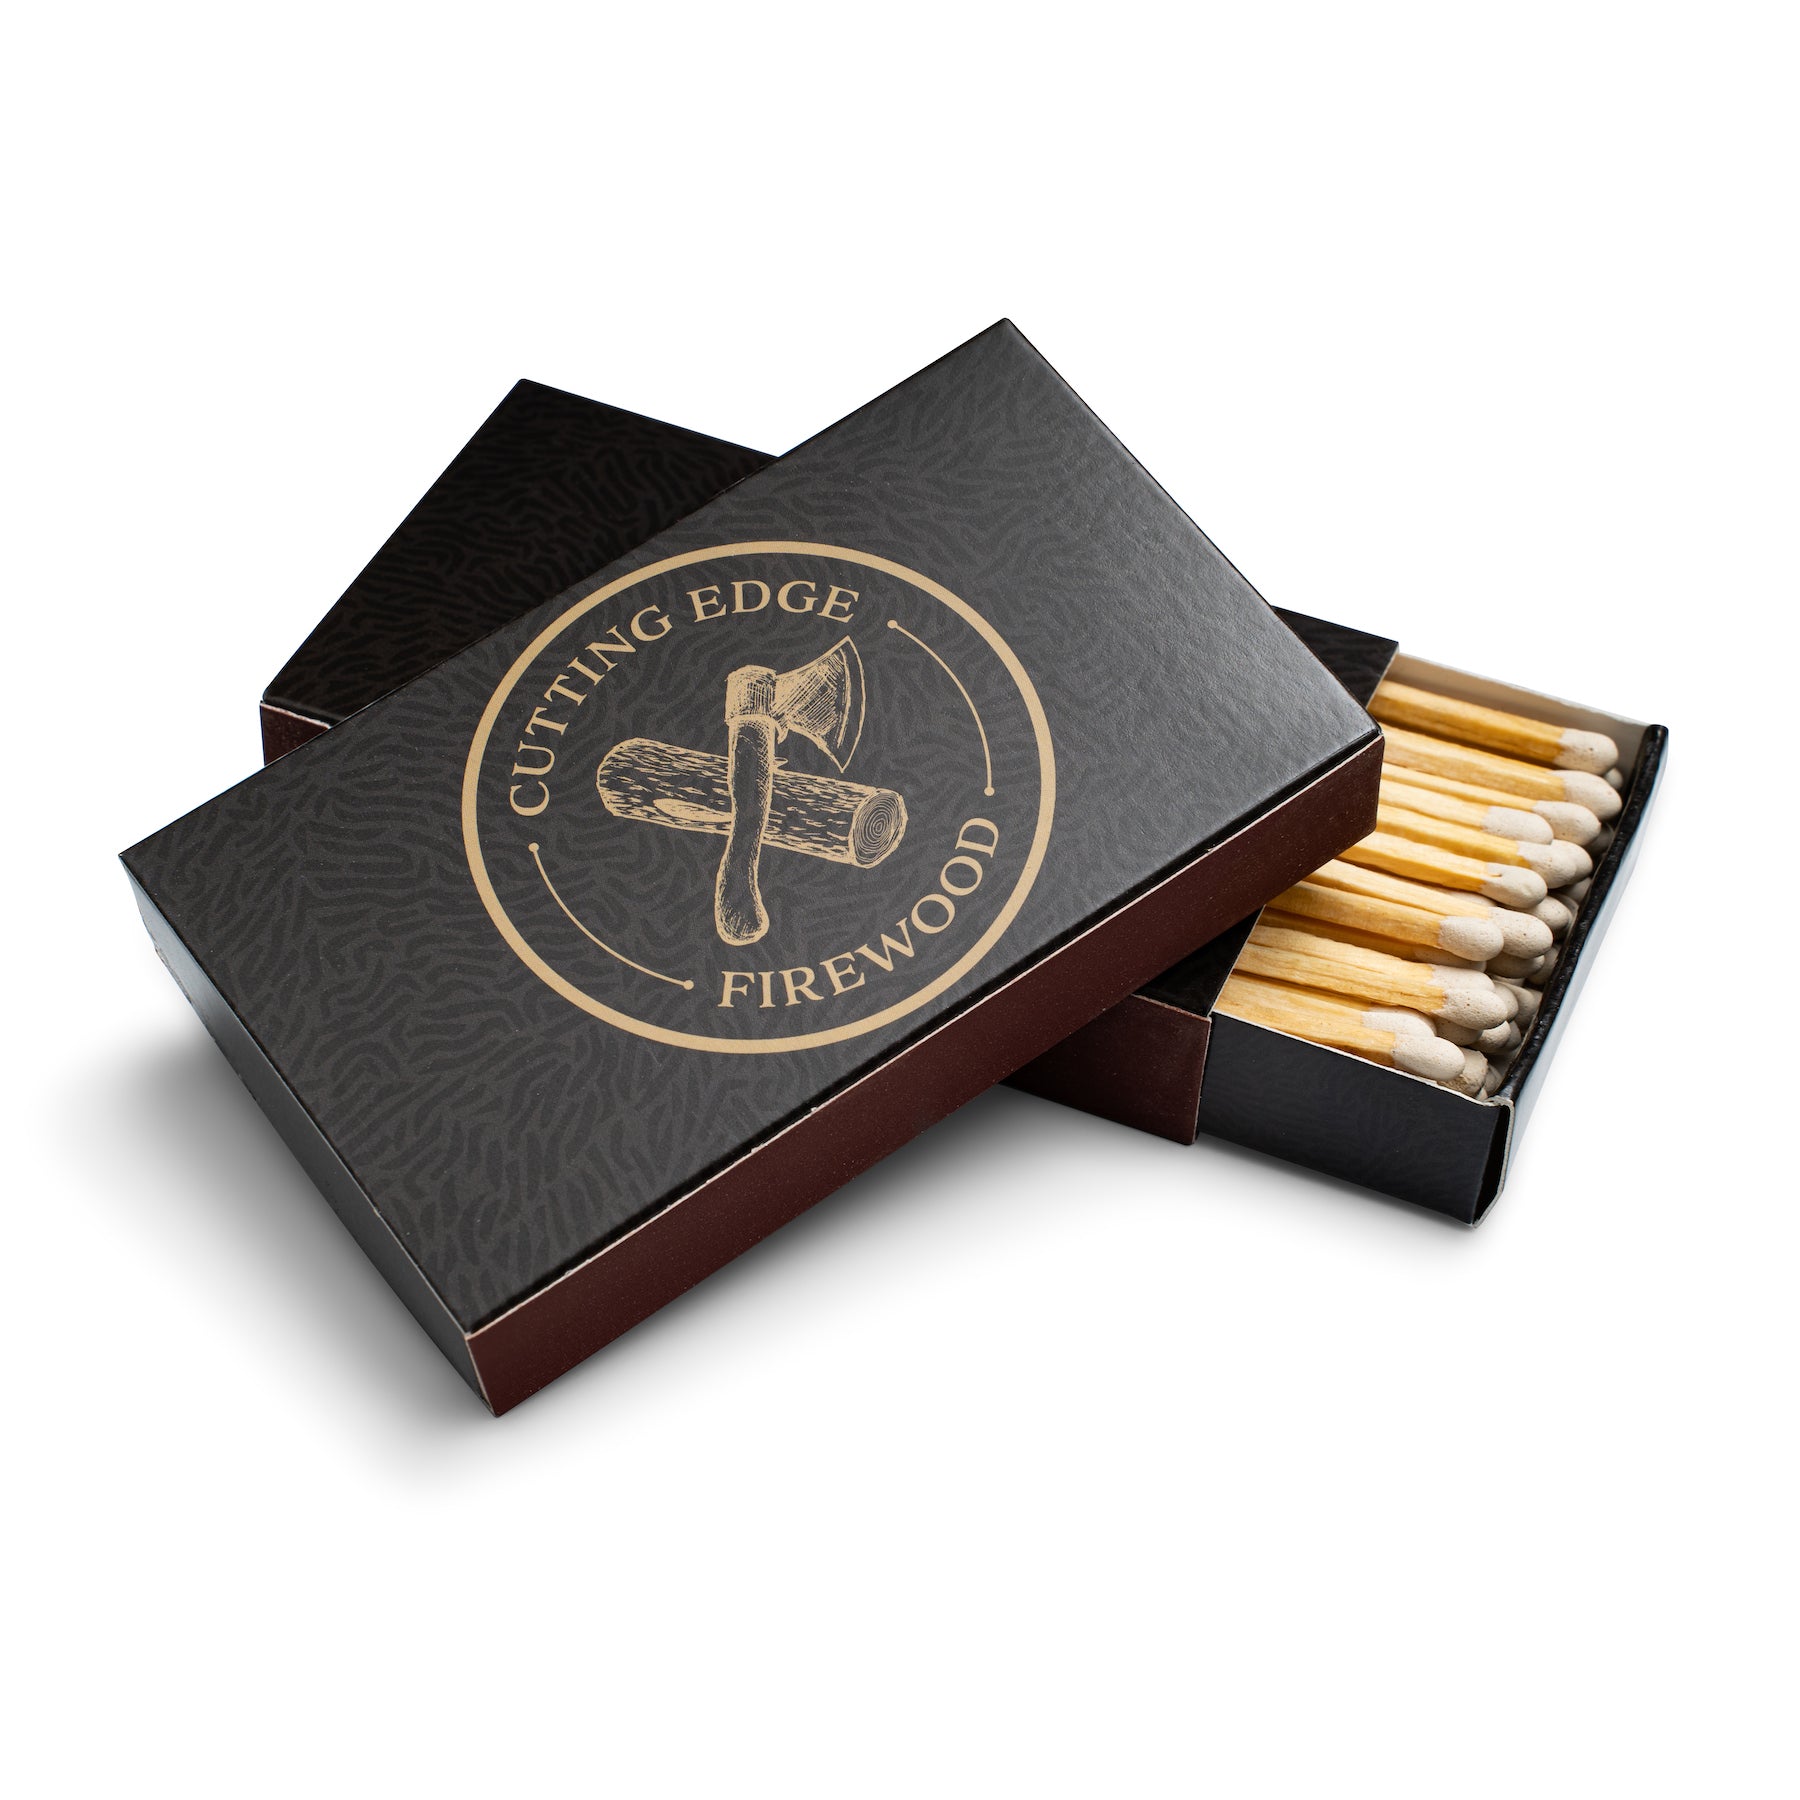 CEF Cigar Matches – Cutting Edge Firewood LLC